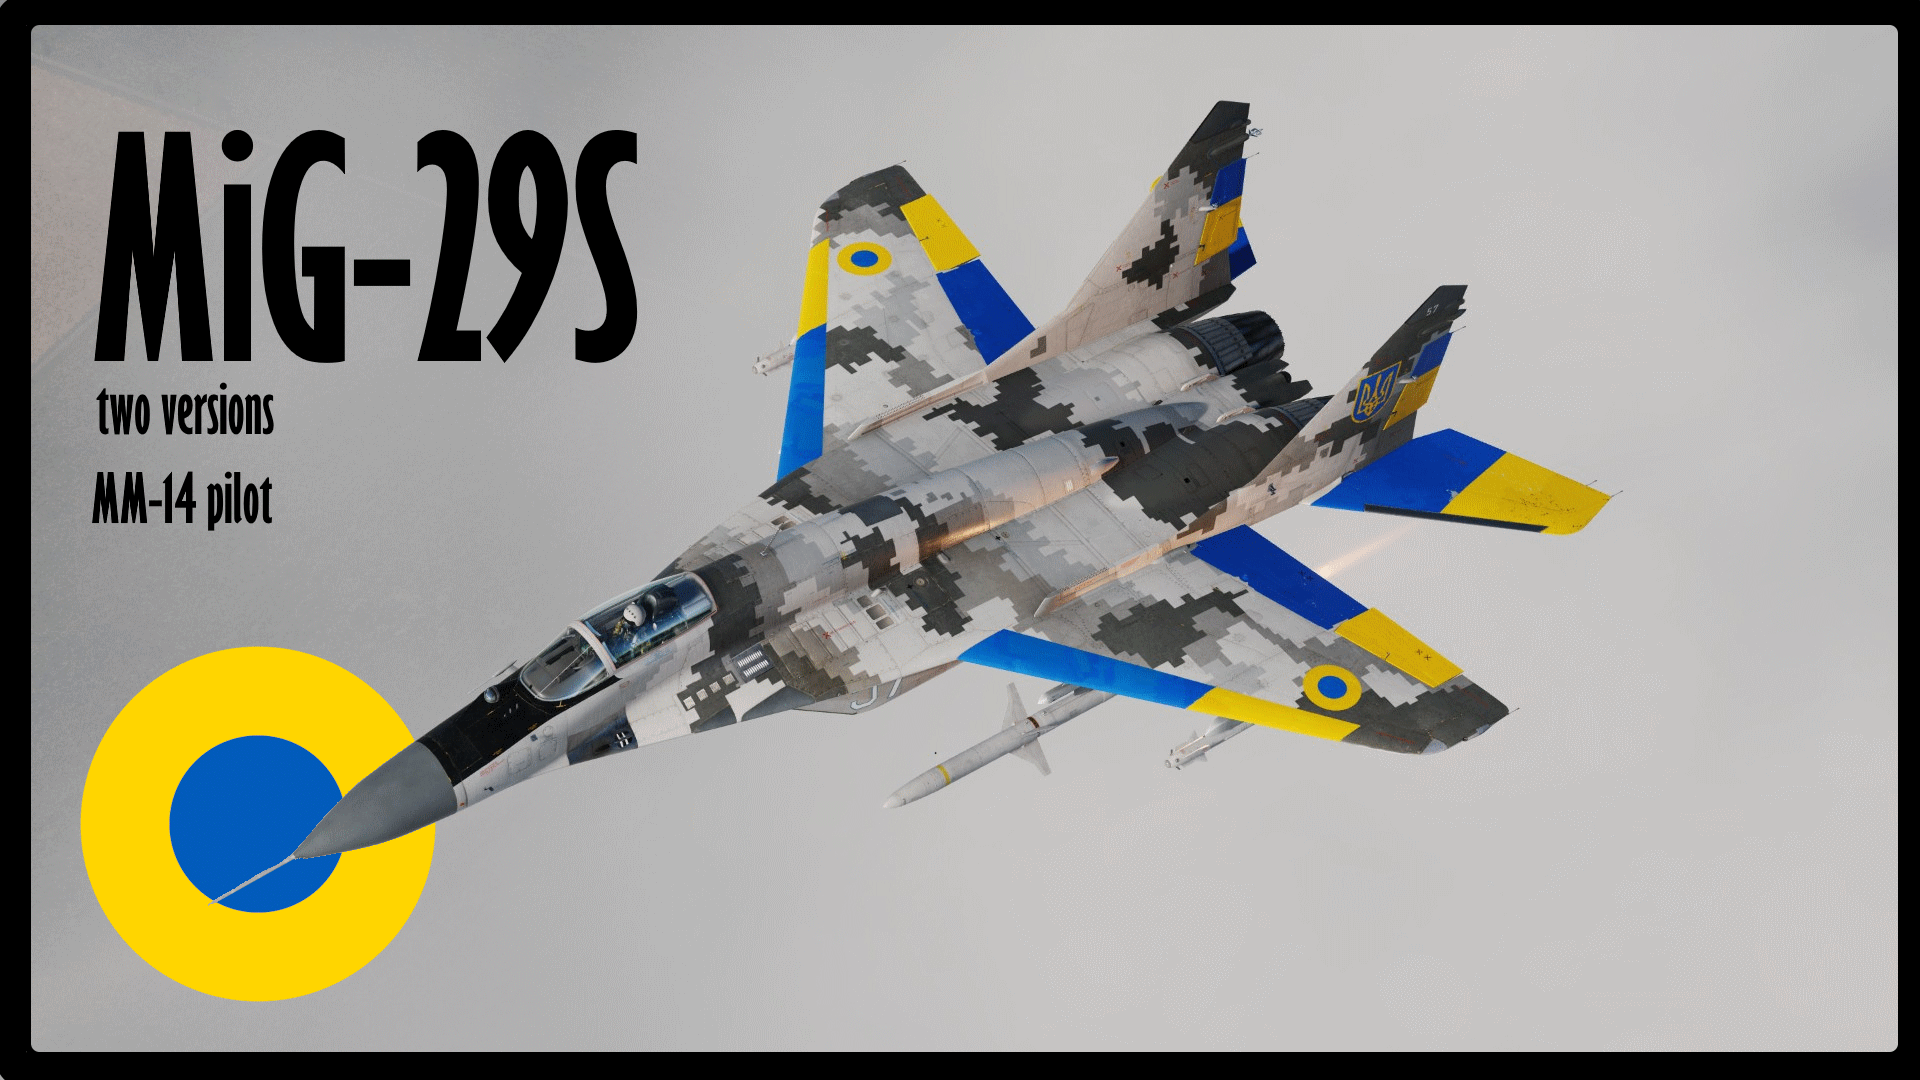 MiG-29S pixel №57 + MM-14 pilot | UA 2 versions